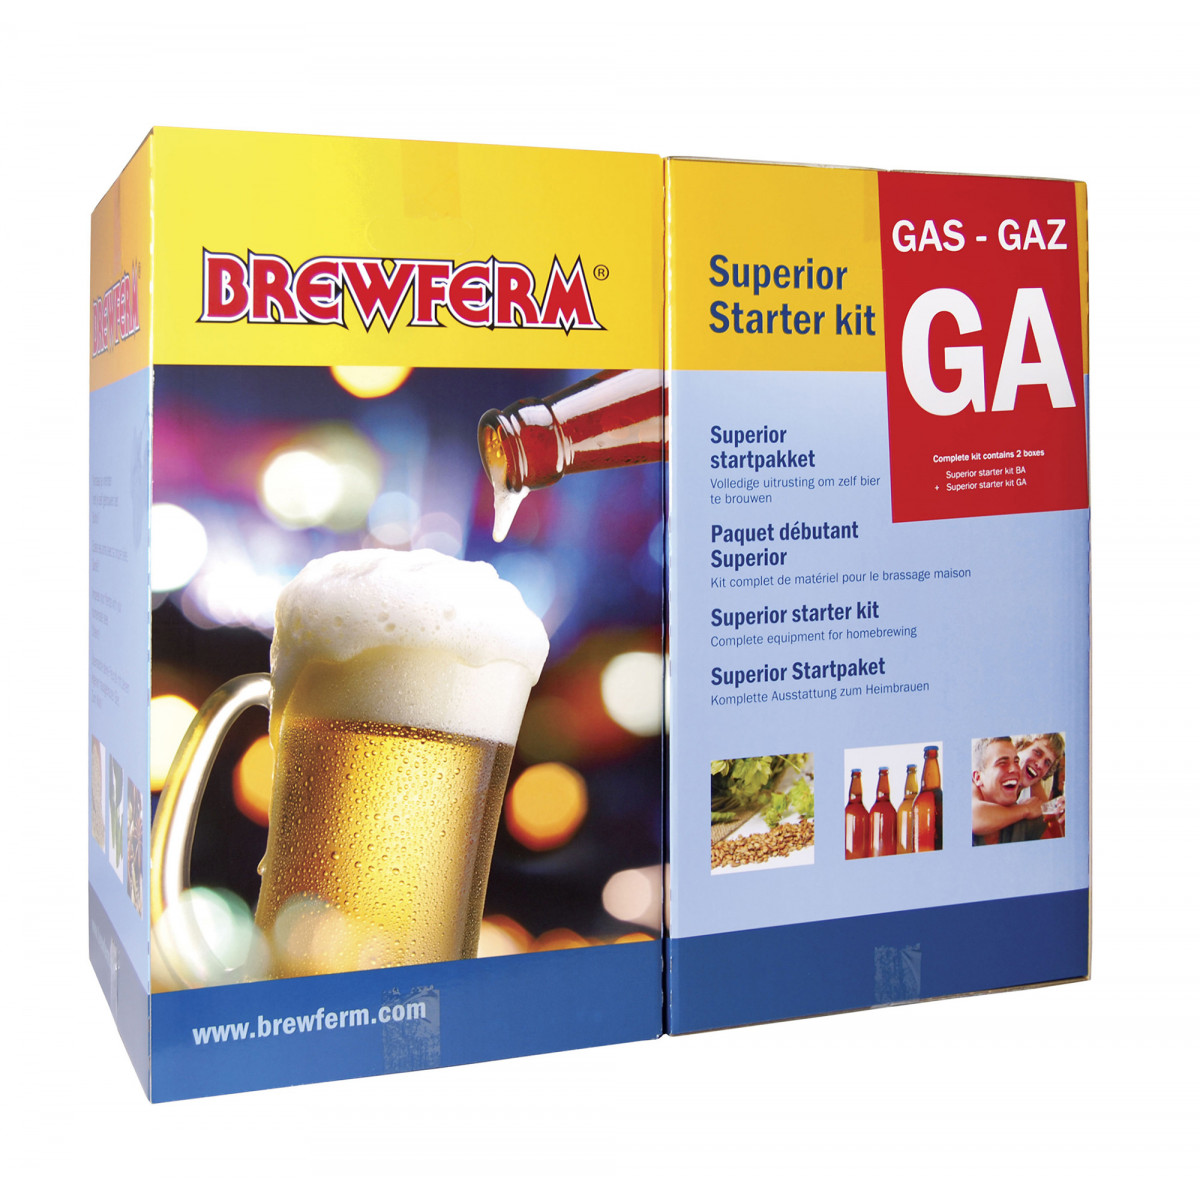 Brewferm Superior startpakket gas